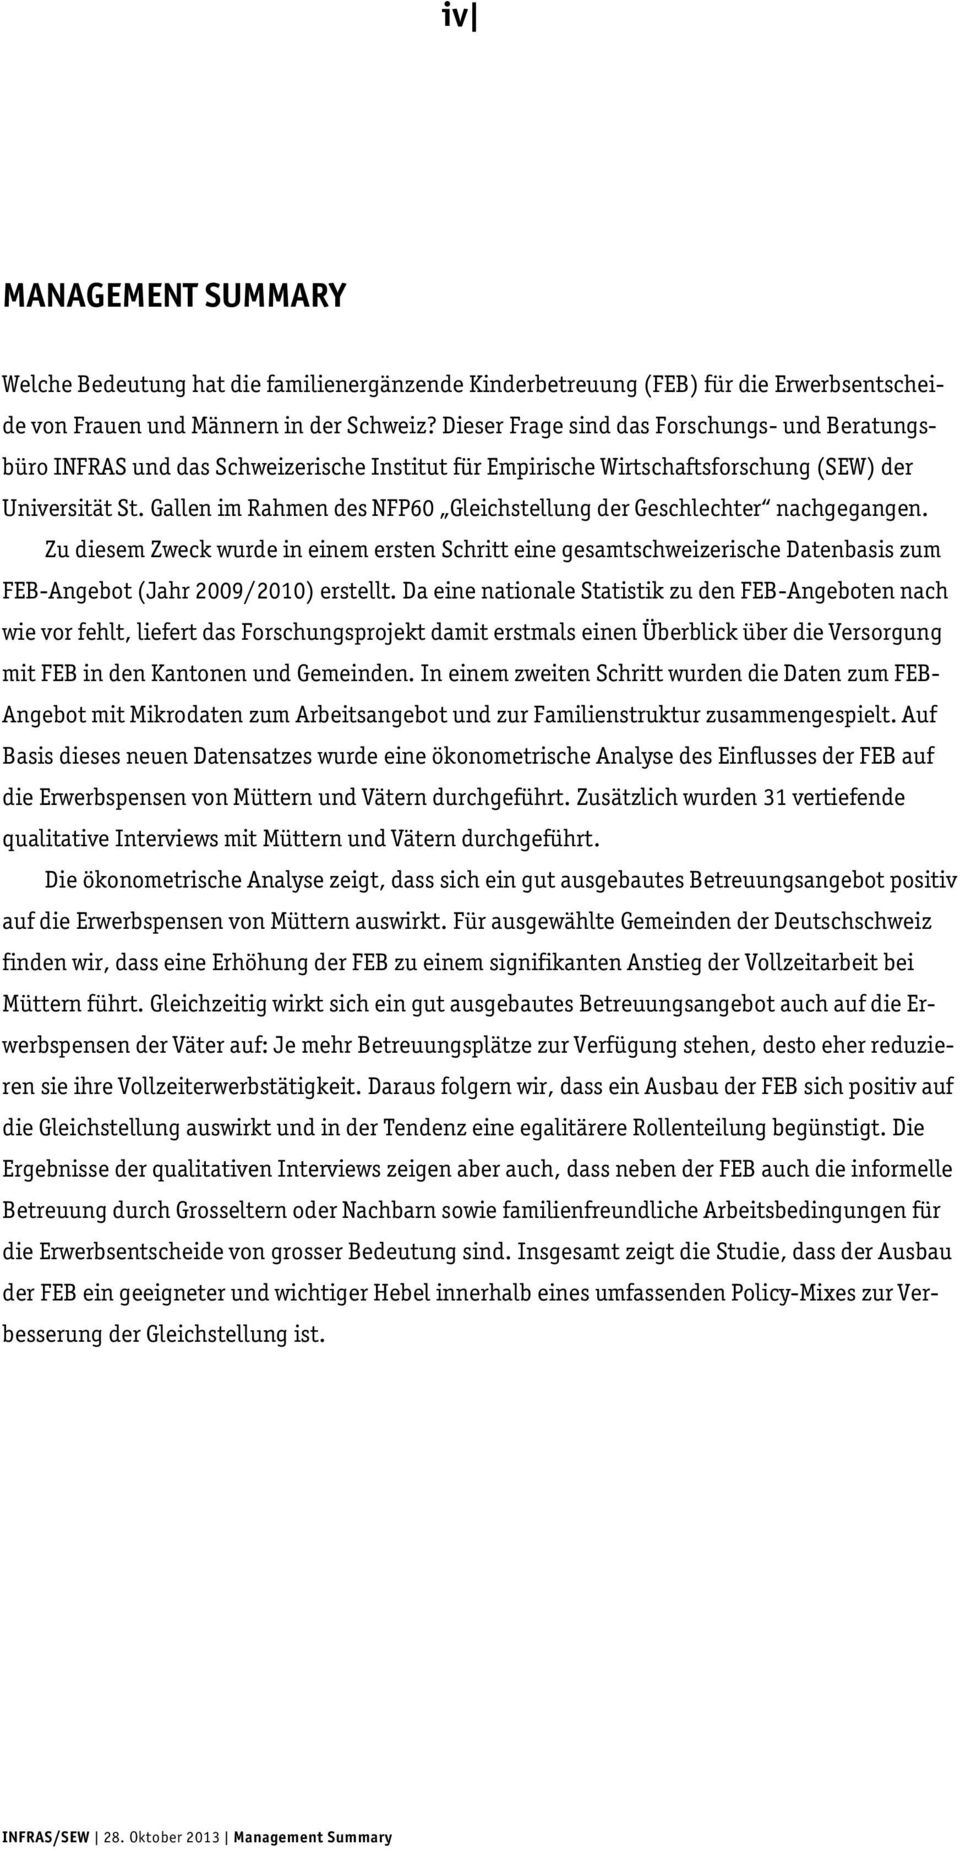 Gallen im Rahmen des NFP60 Gleichstellung der Geschlechter nachgegangen. Zu diesem Zweck wurde in einem ersten Schritt eine gesamtschweizerische Datenbasis zum FEB-Angebot (Jahr 2009/2010) erstellt.